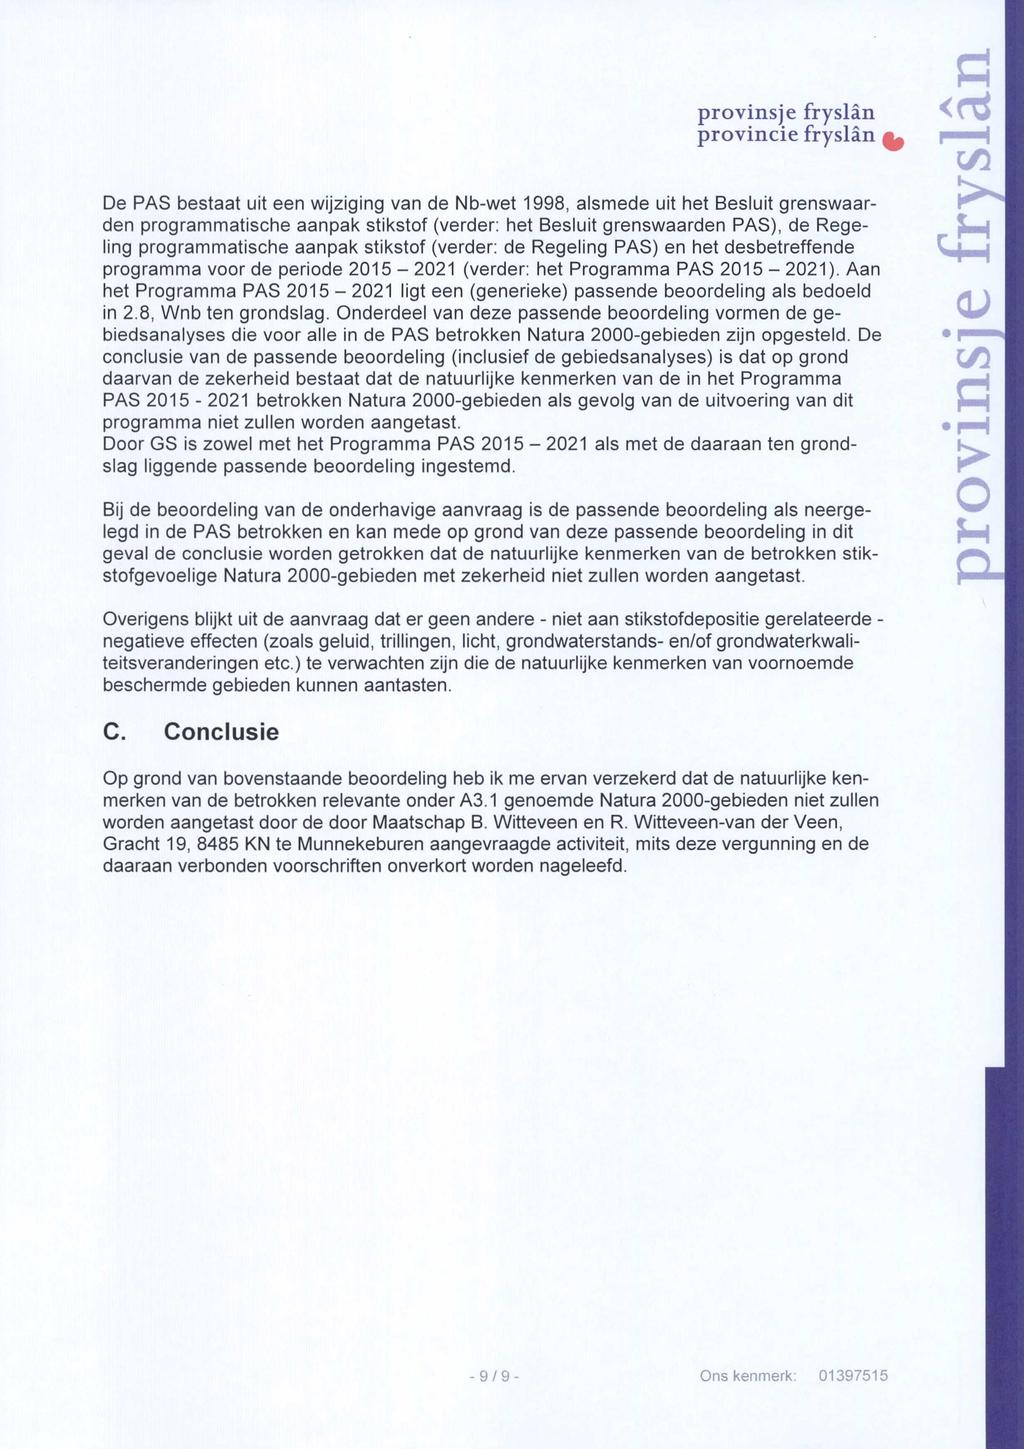 provinsje fryslän provincie fryslän ^ De PAS bestaat uit een wijziging van de Nb-wet 1998, alsmede uit het Besluit grenswaarden programmatische aanpak stikstof (verder: het Besluit grenswaarden PAS),